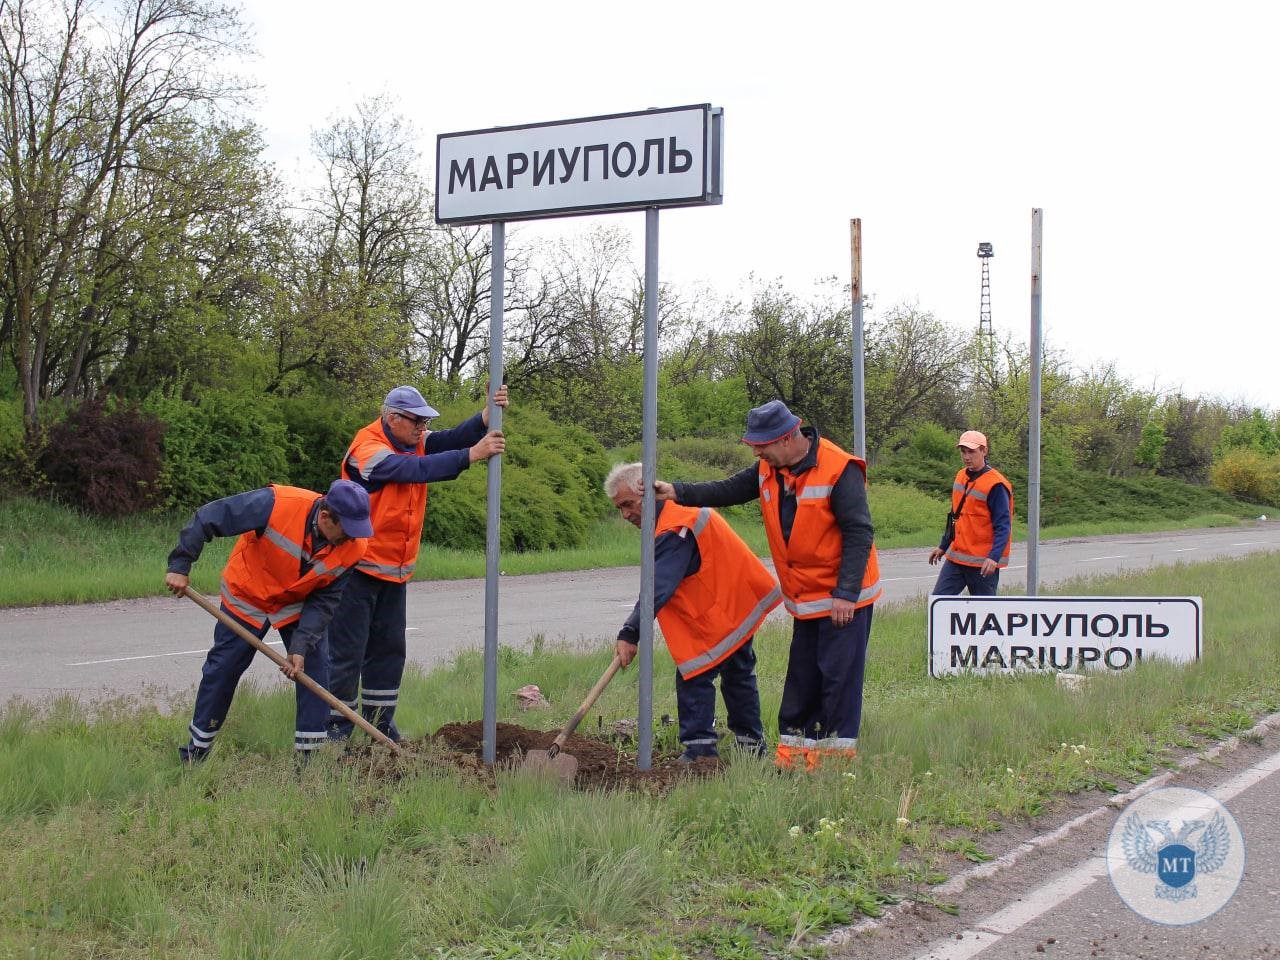 Straßenschild in Mariupol